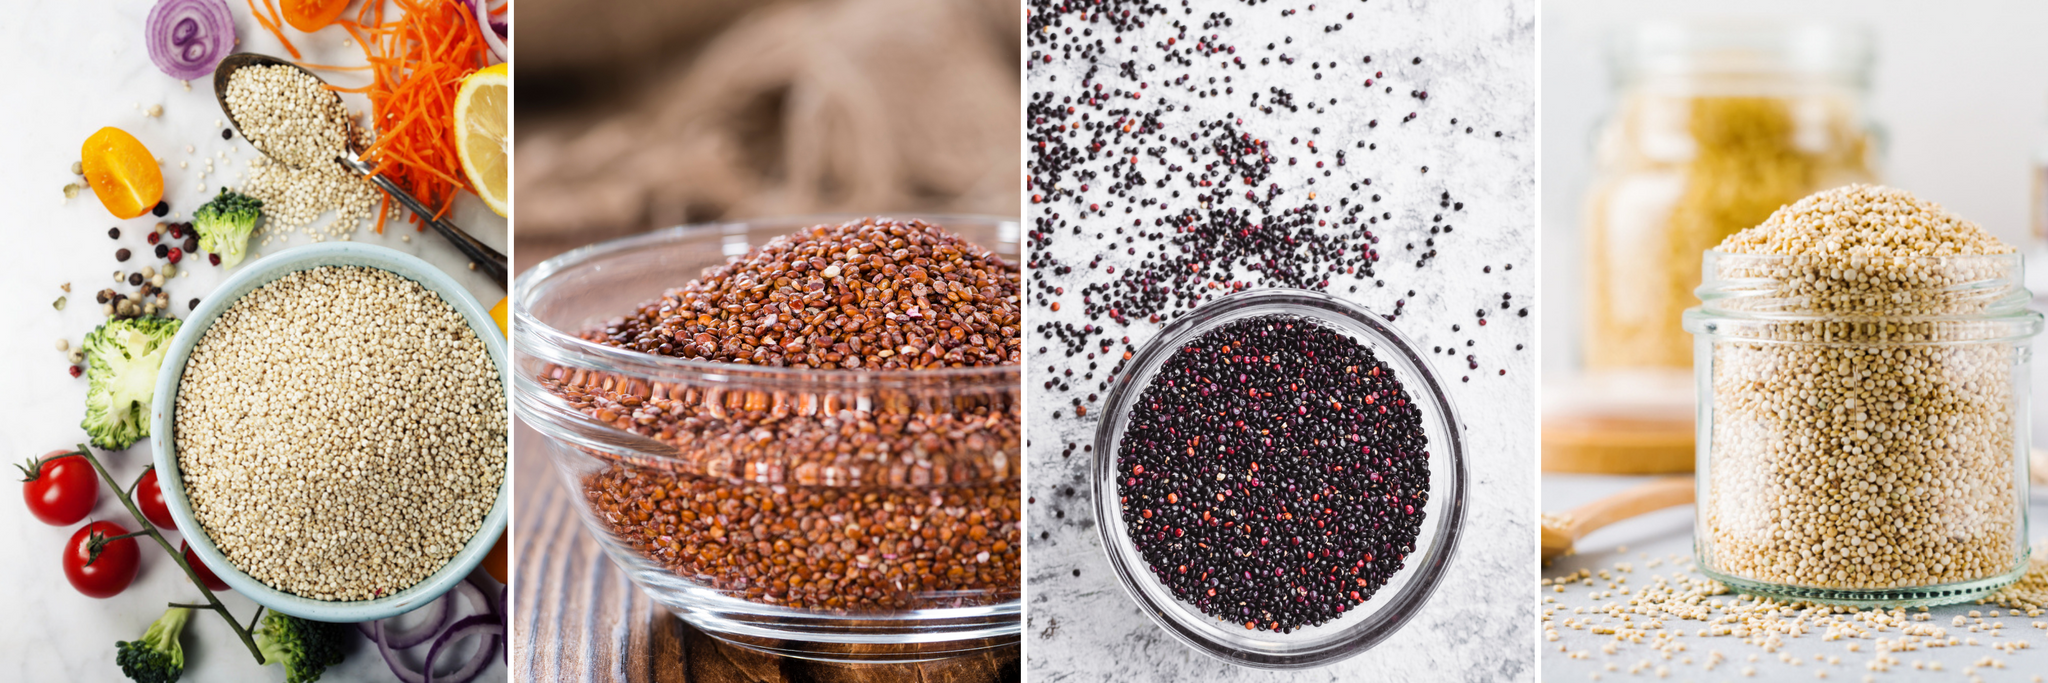 Types of Quinoa Seeds